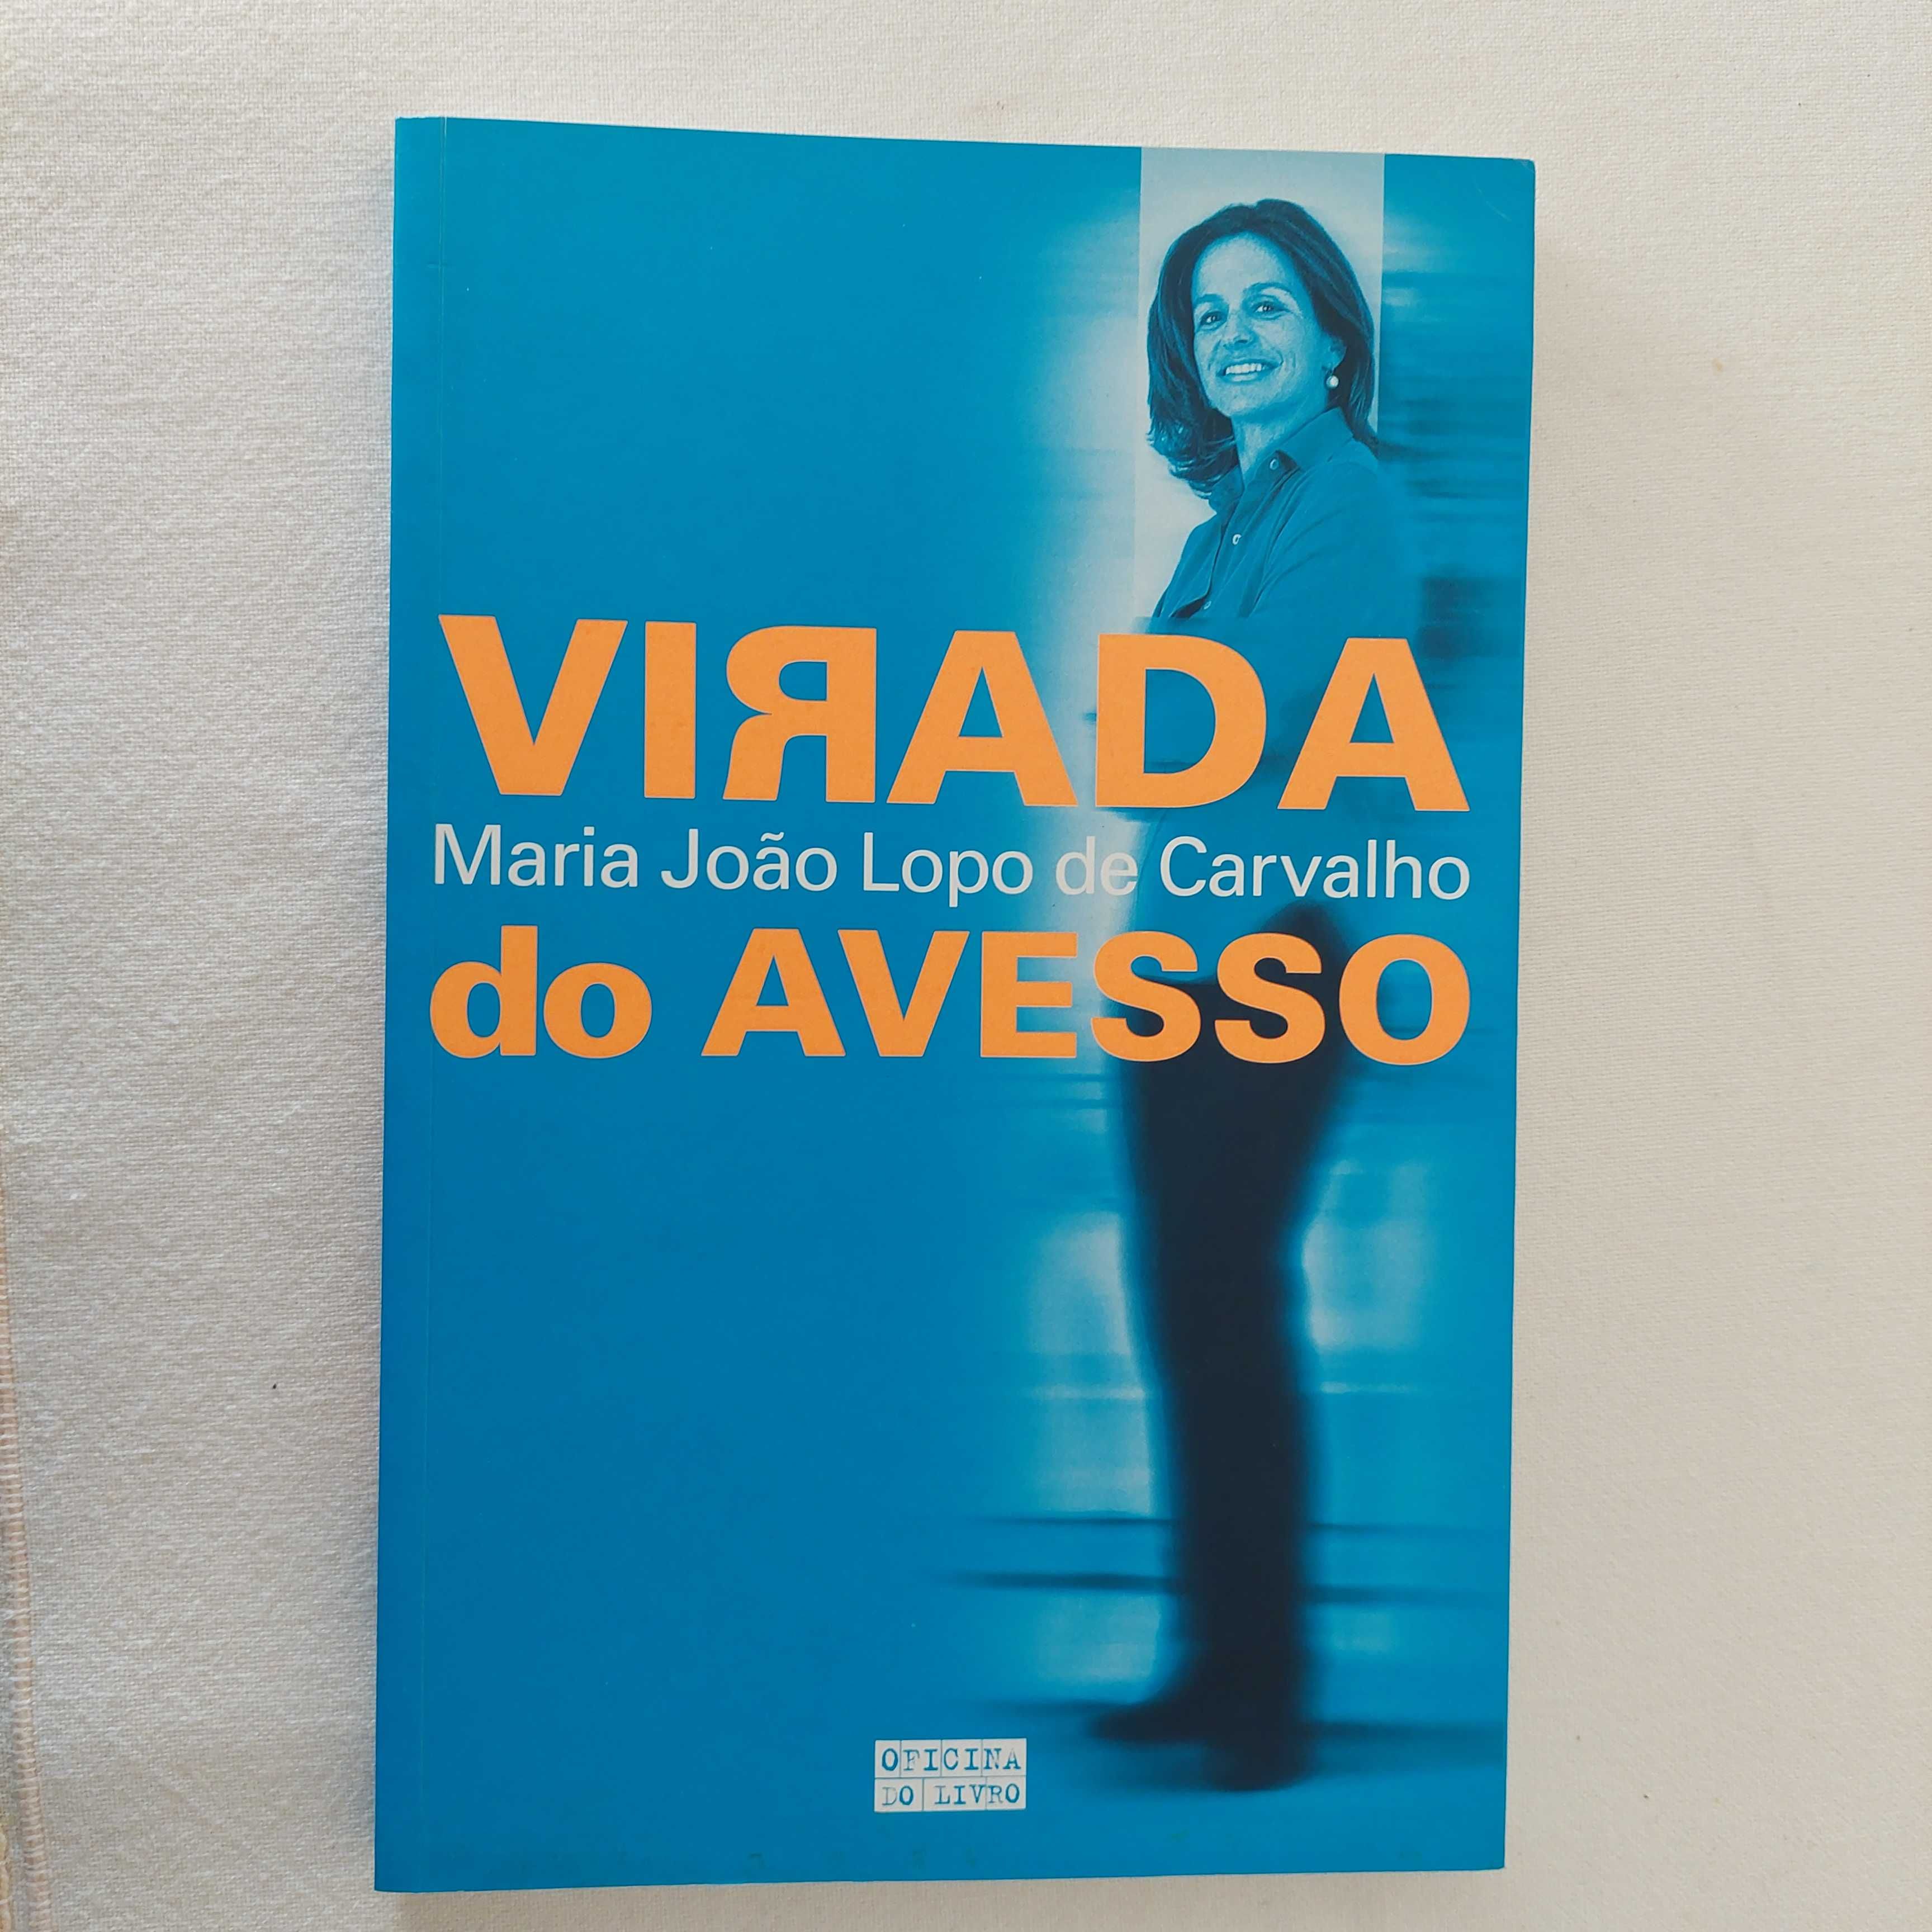 Maria João Lopo de Carvalho - Virada do Avesso